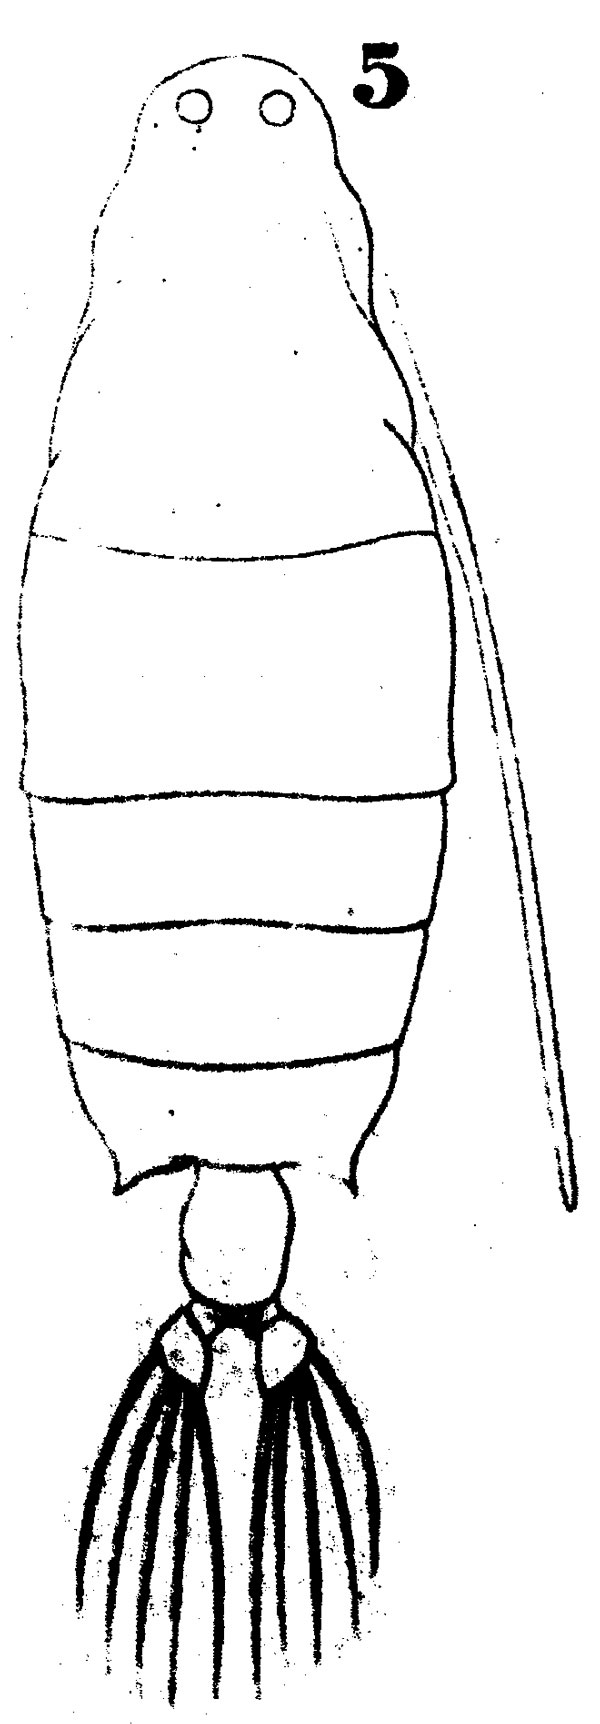 Espce Labidocera nerii - Planche 1 de figures morphologiques